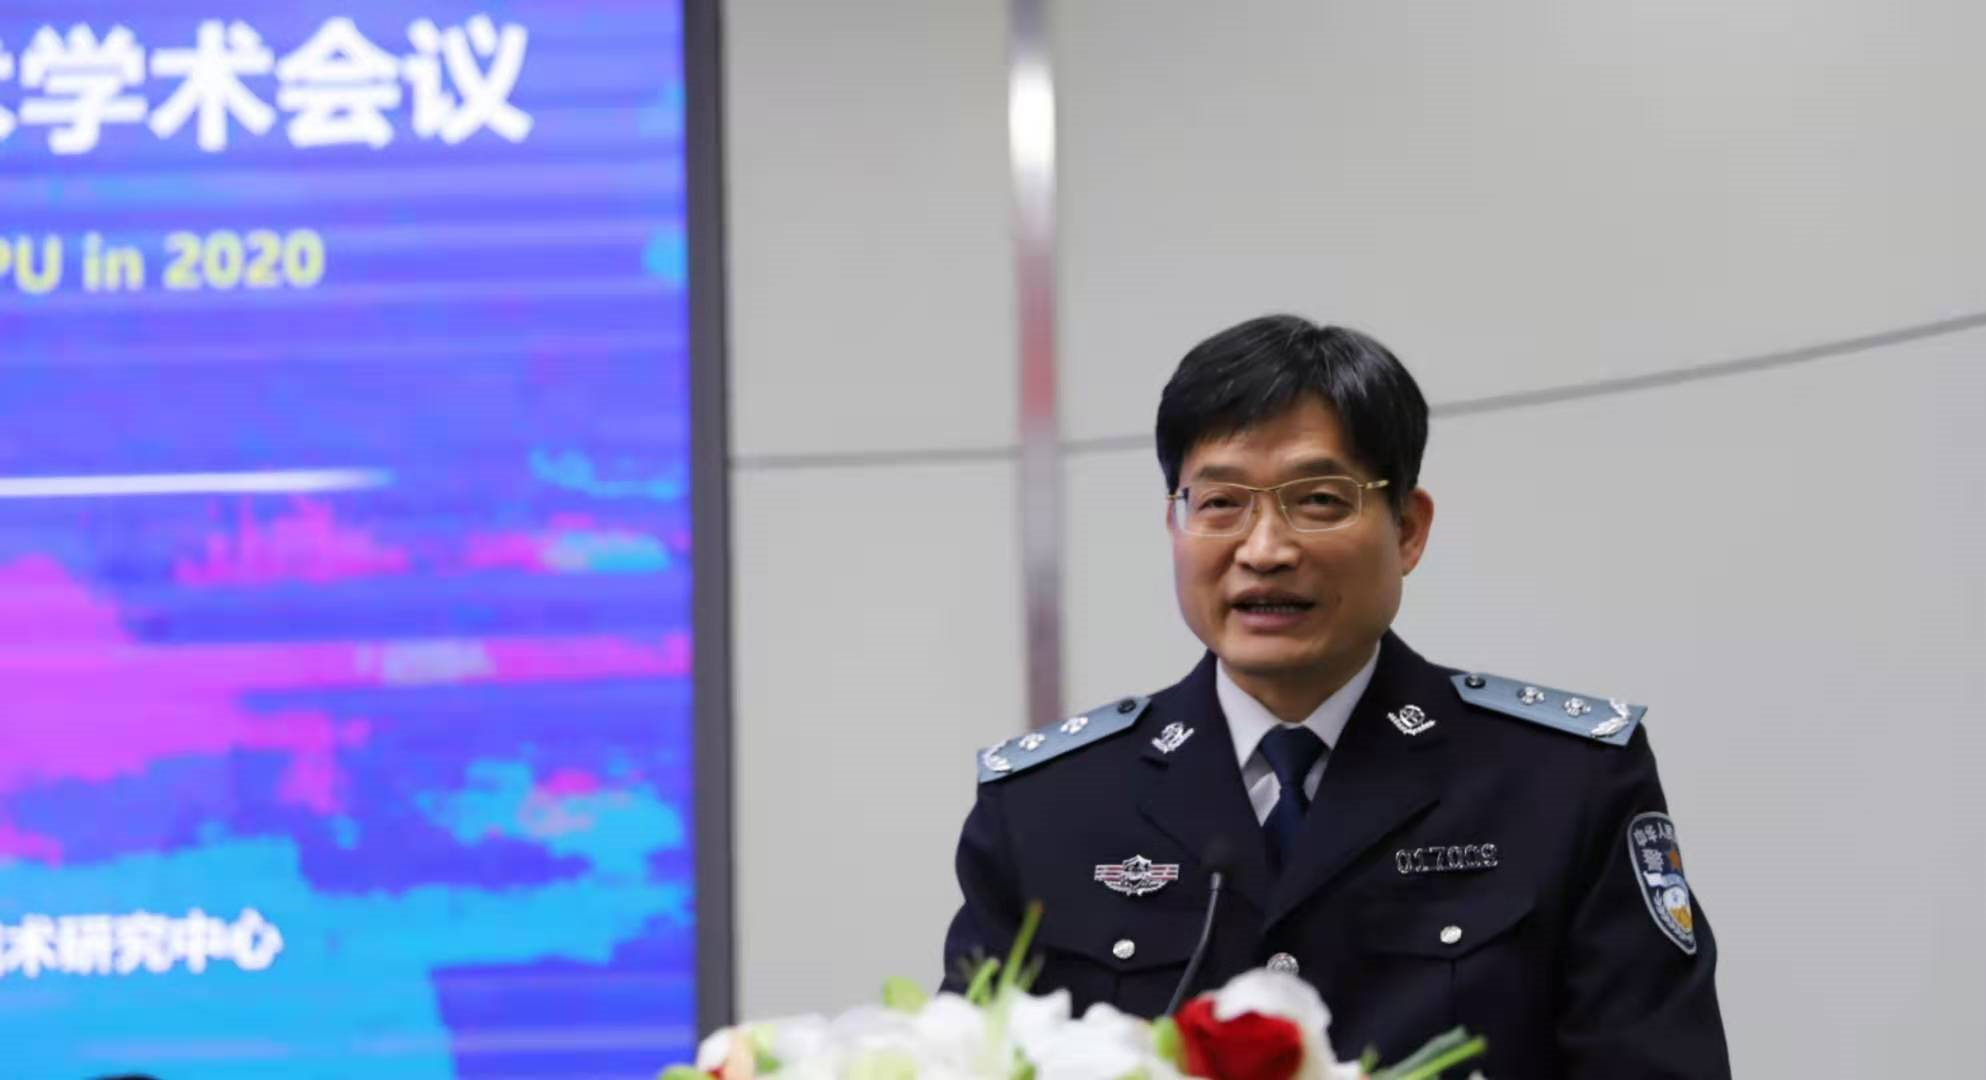 中国人民警察大学成功举办“2020首届警用装备技术学术会议”！(组图)